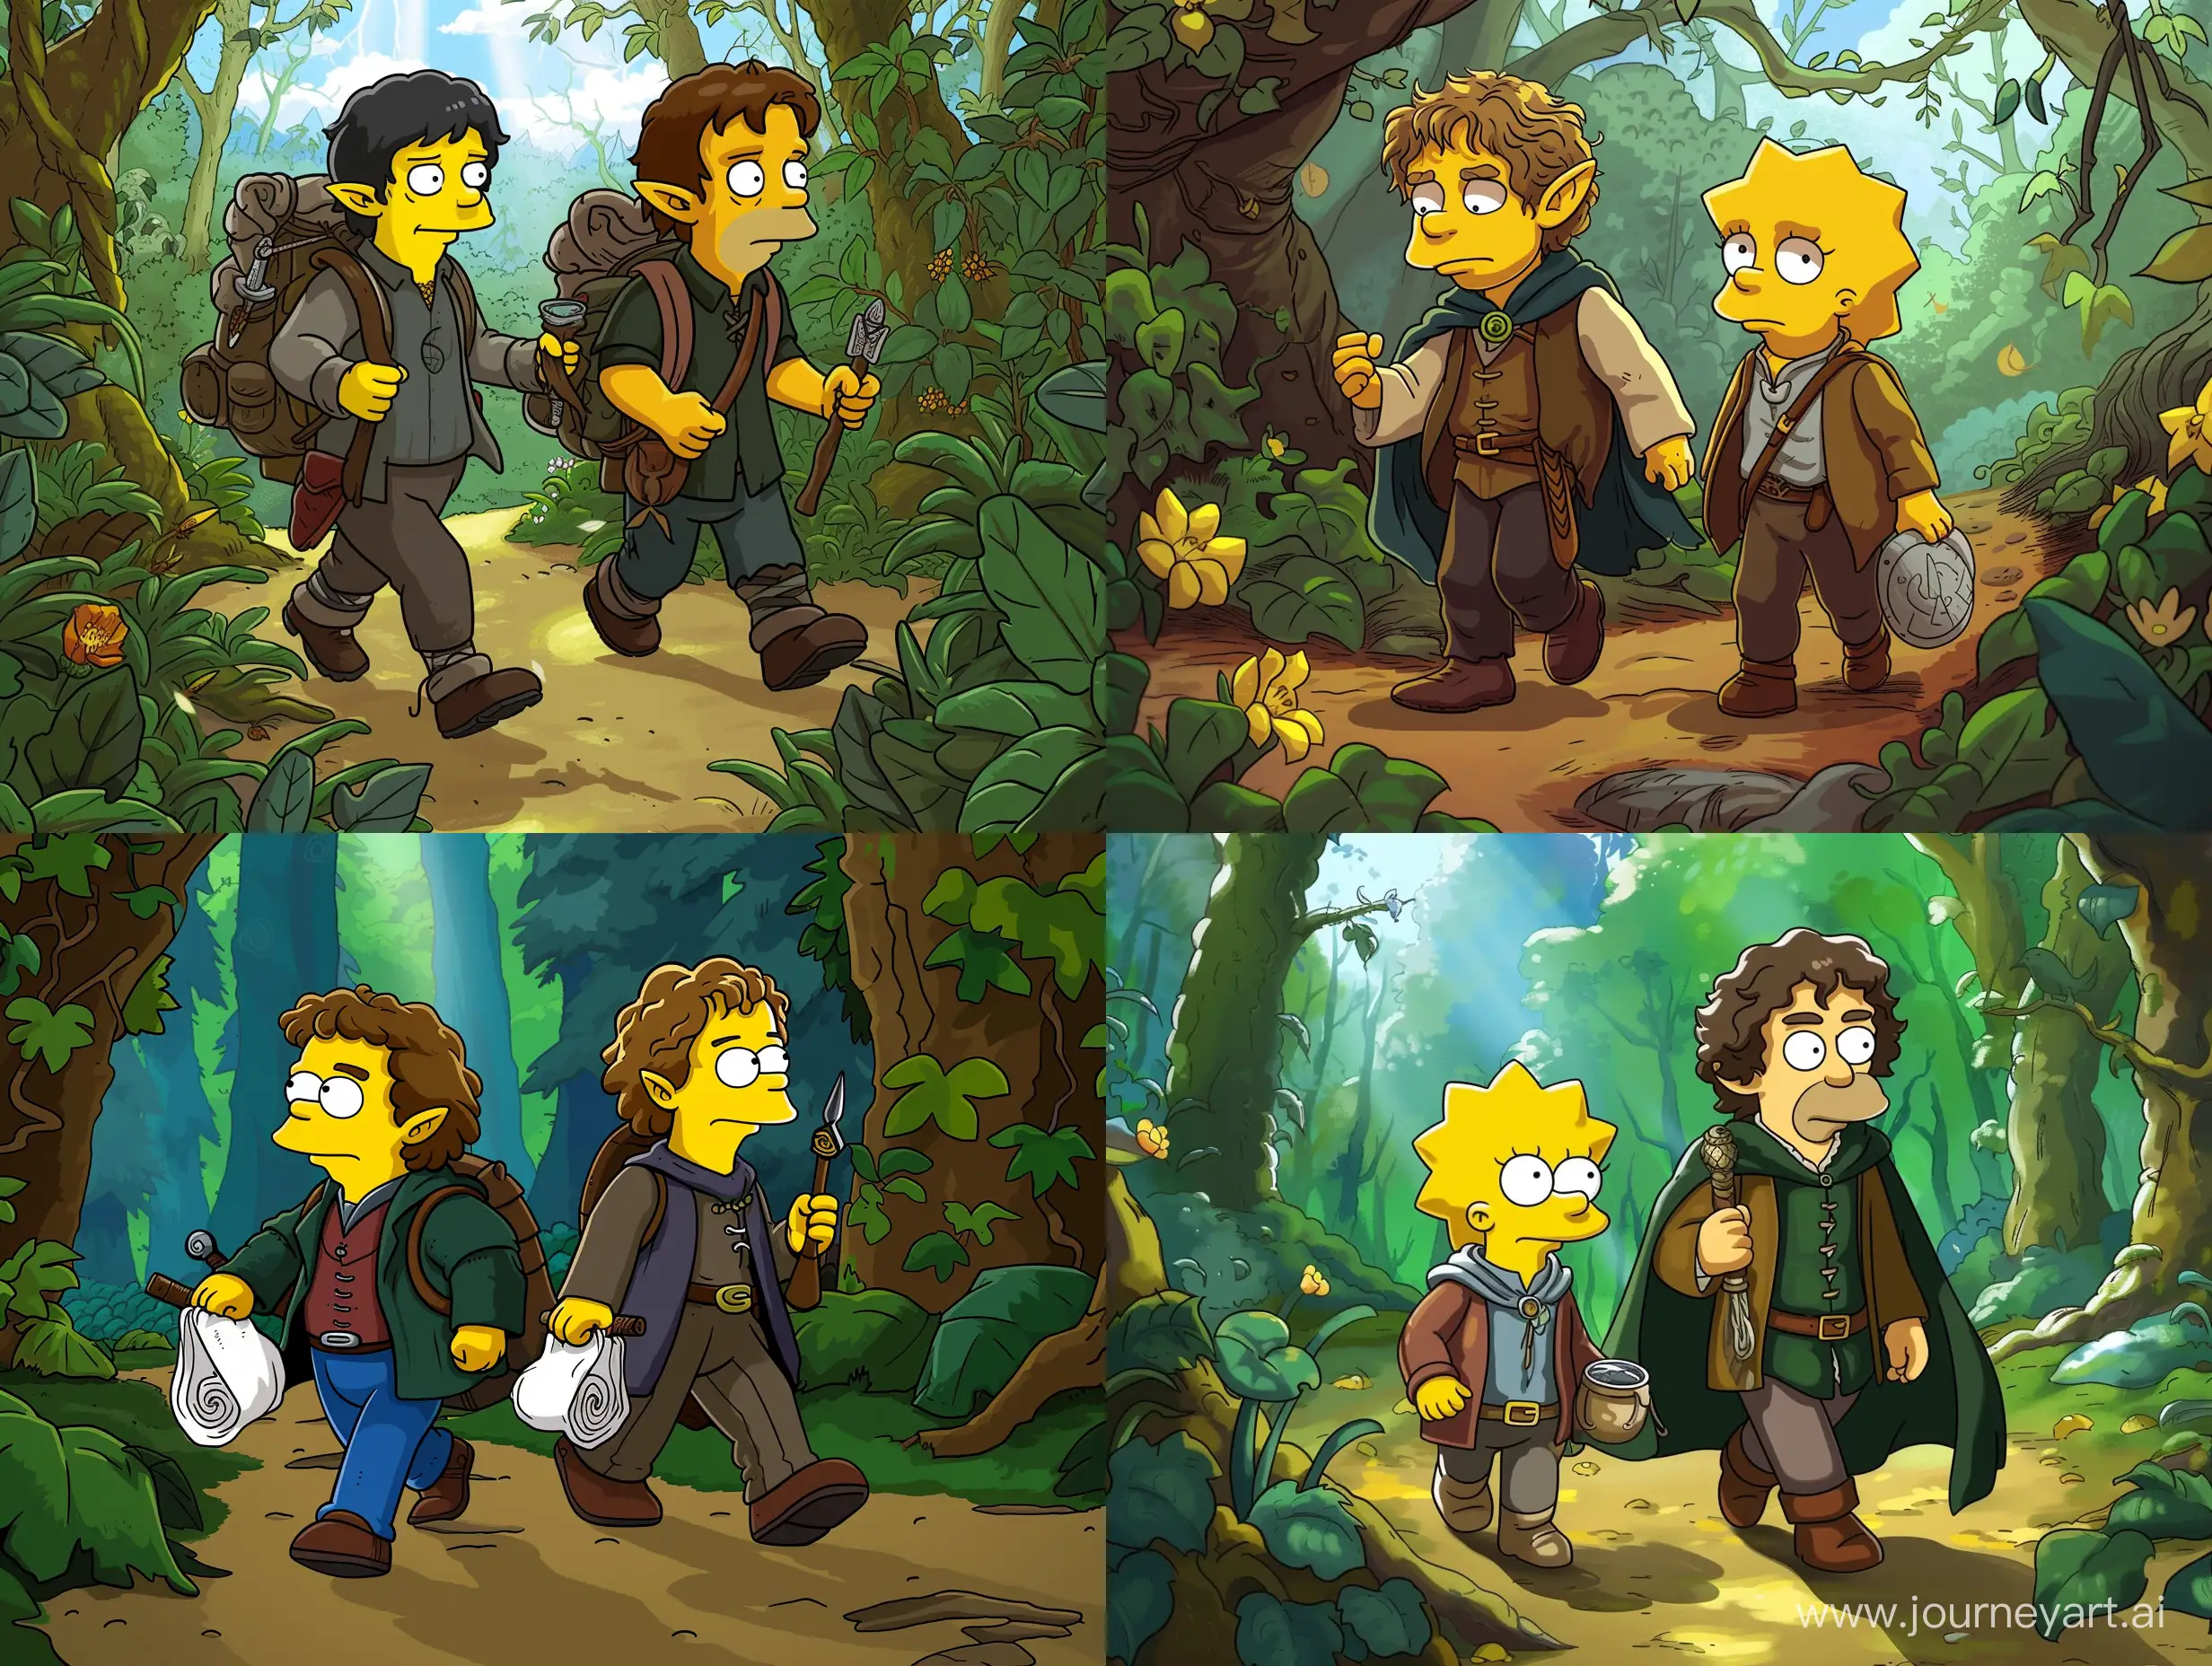 Фродо и Сэм властелин колец идут по лесу, в стиле симпсонов